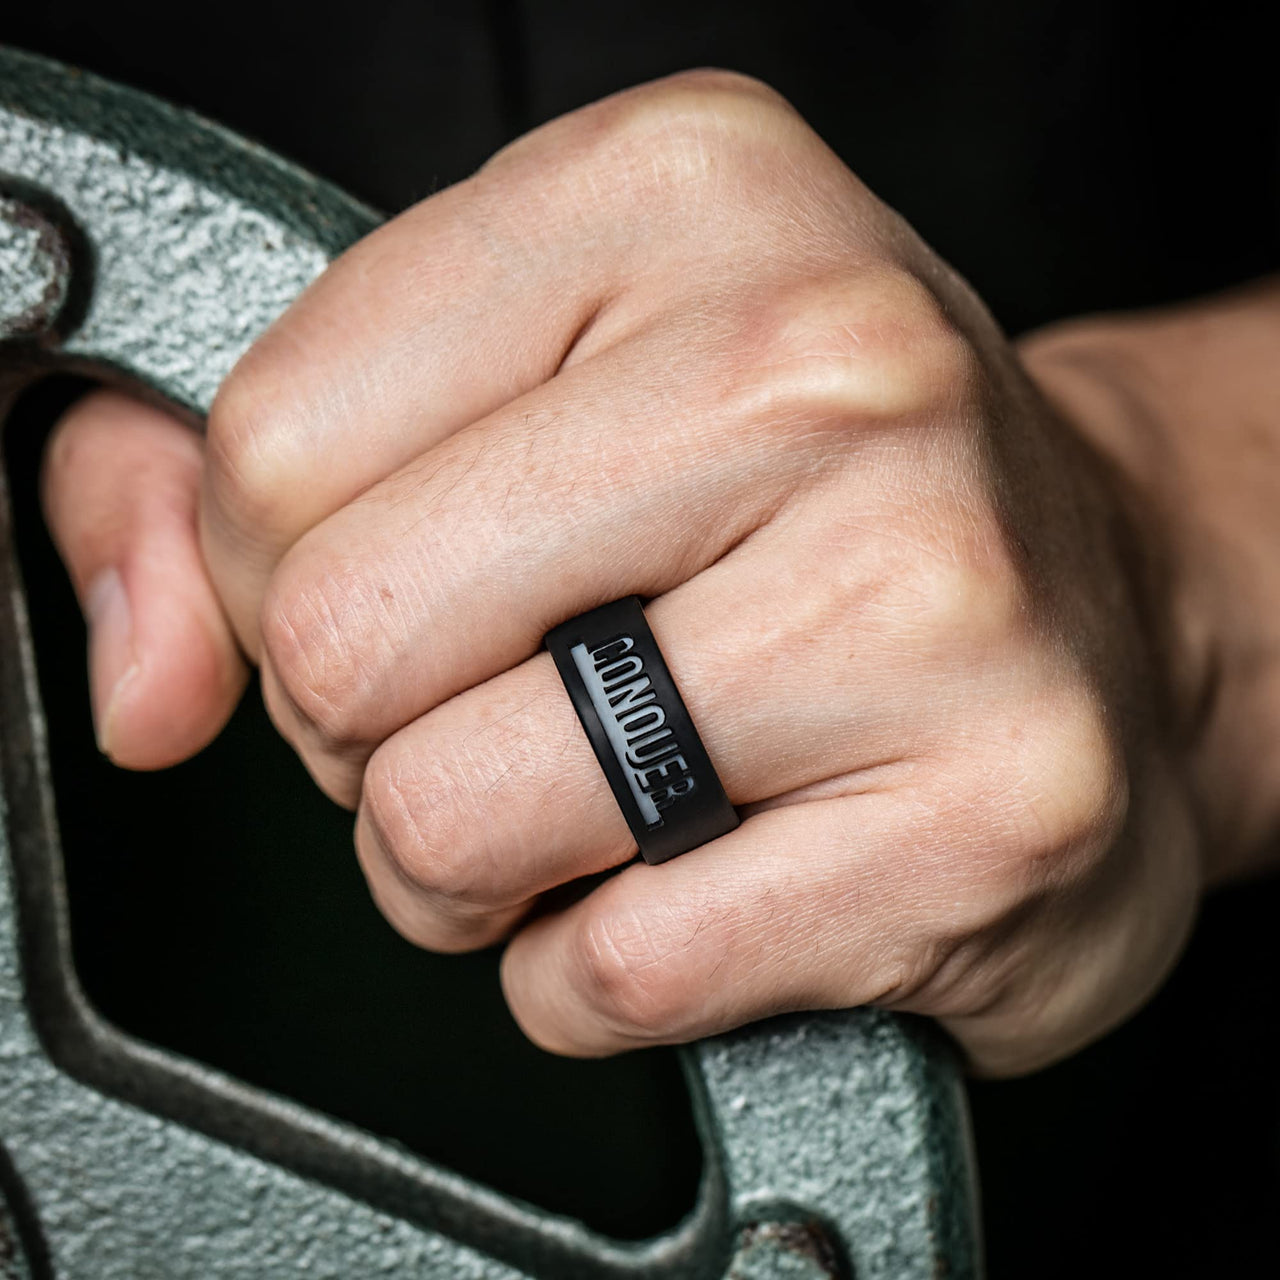 Printed Men's Ring